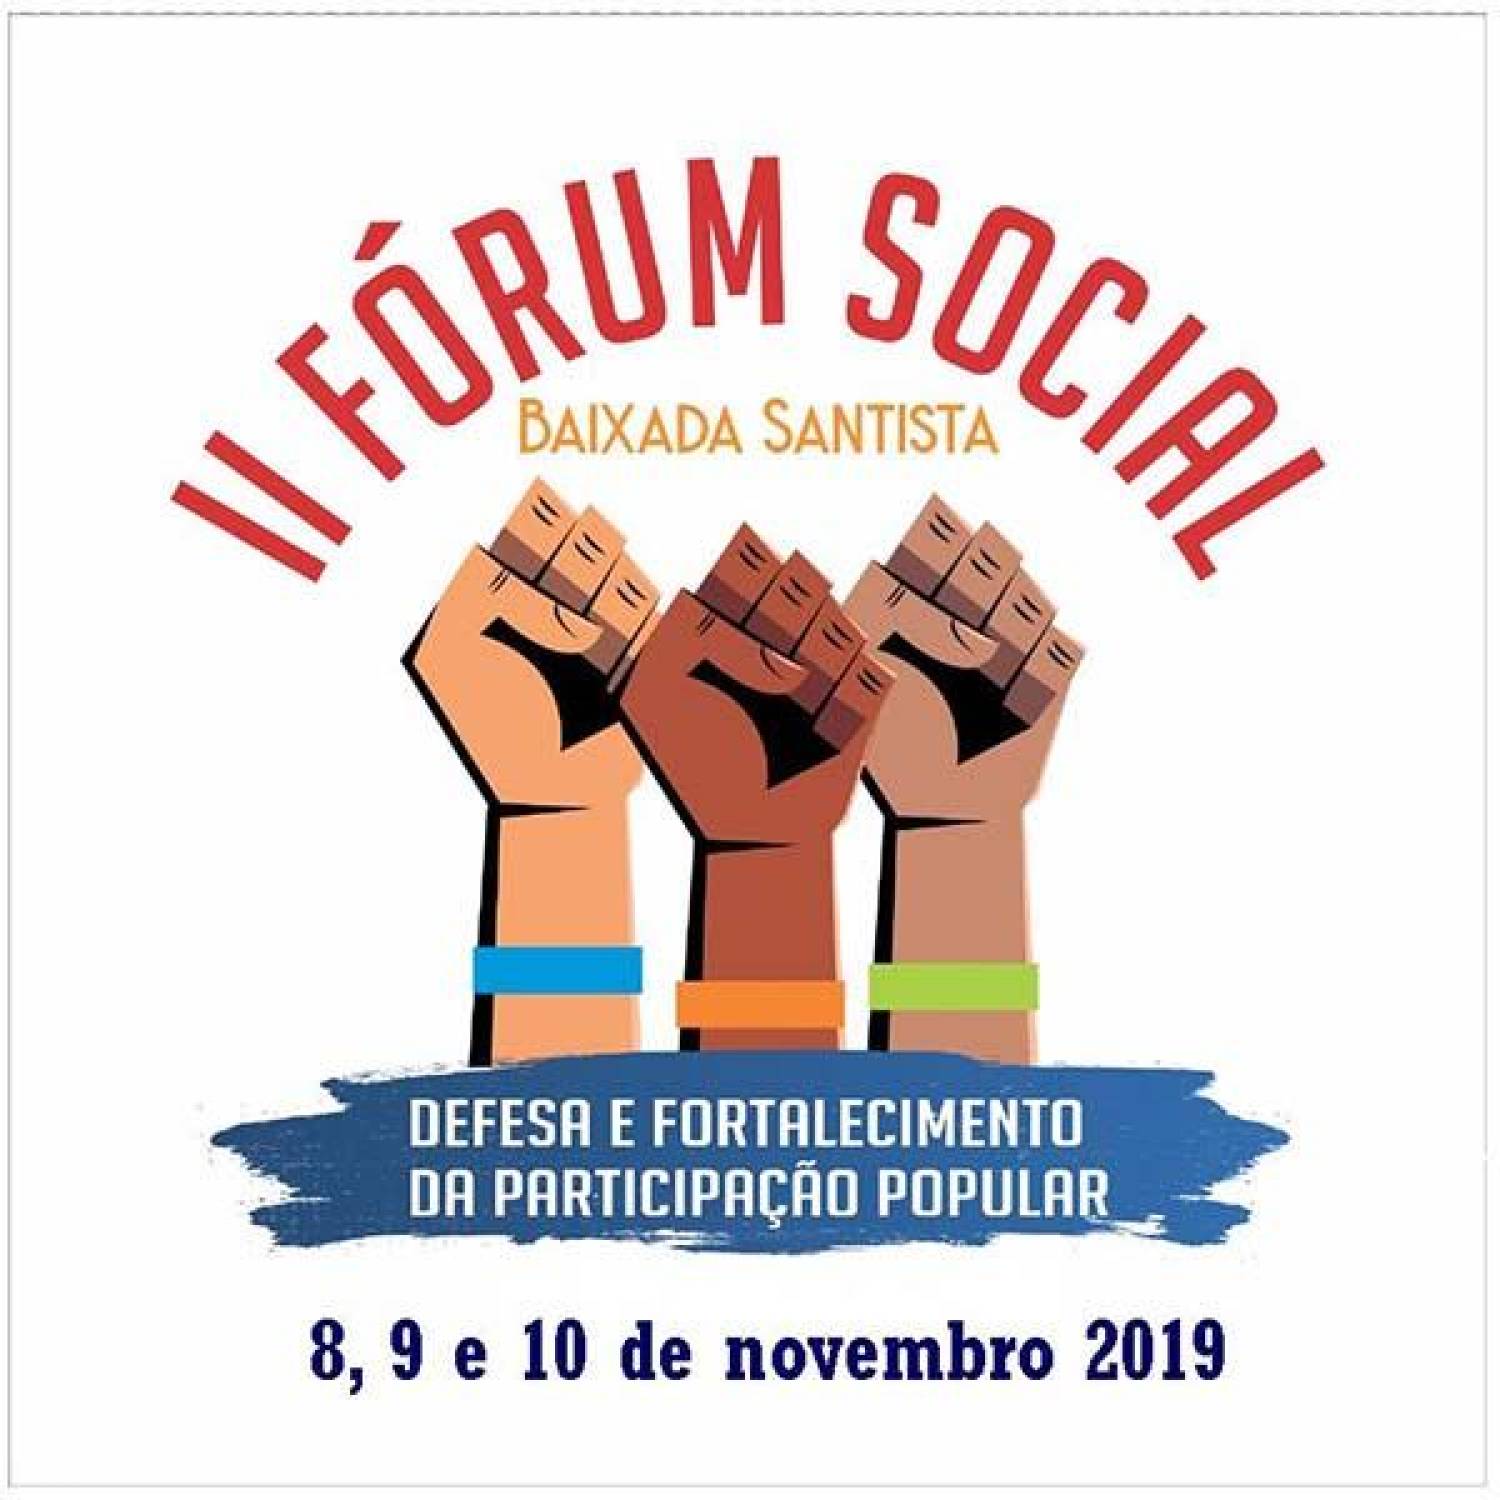 II Fórum Social da Baixada Santista discute participação popular